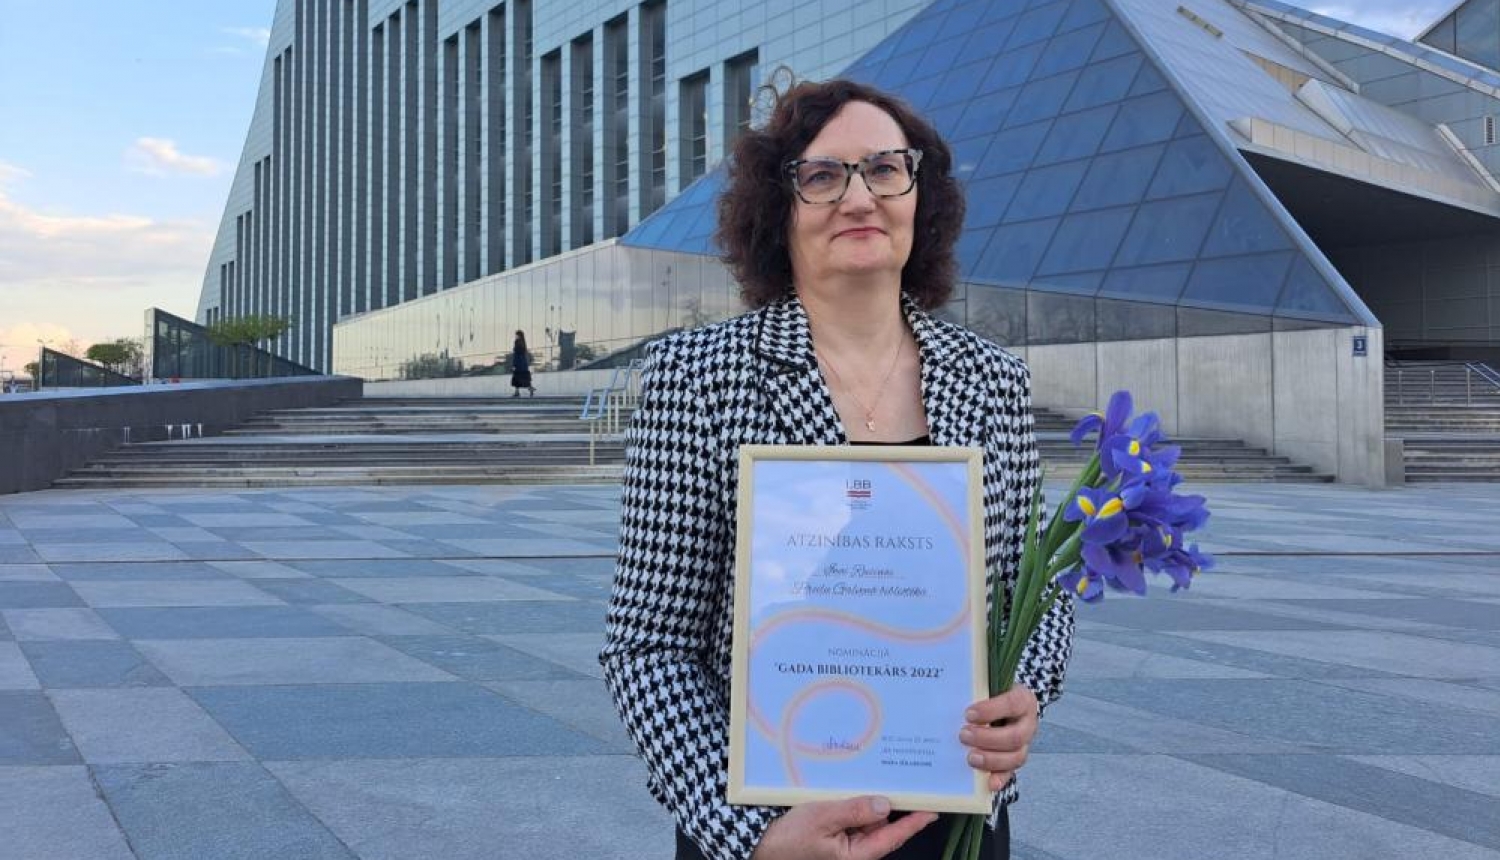 Ina Rusiņa saņem Latvijas Bibliotekāru biedrības balvu “Gada bibliotekārs 2022”